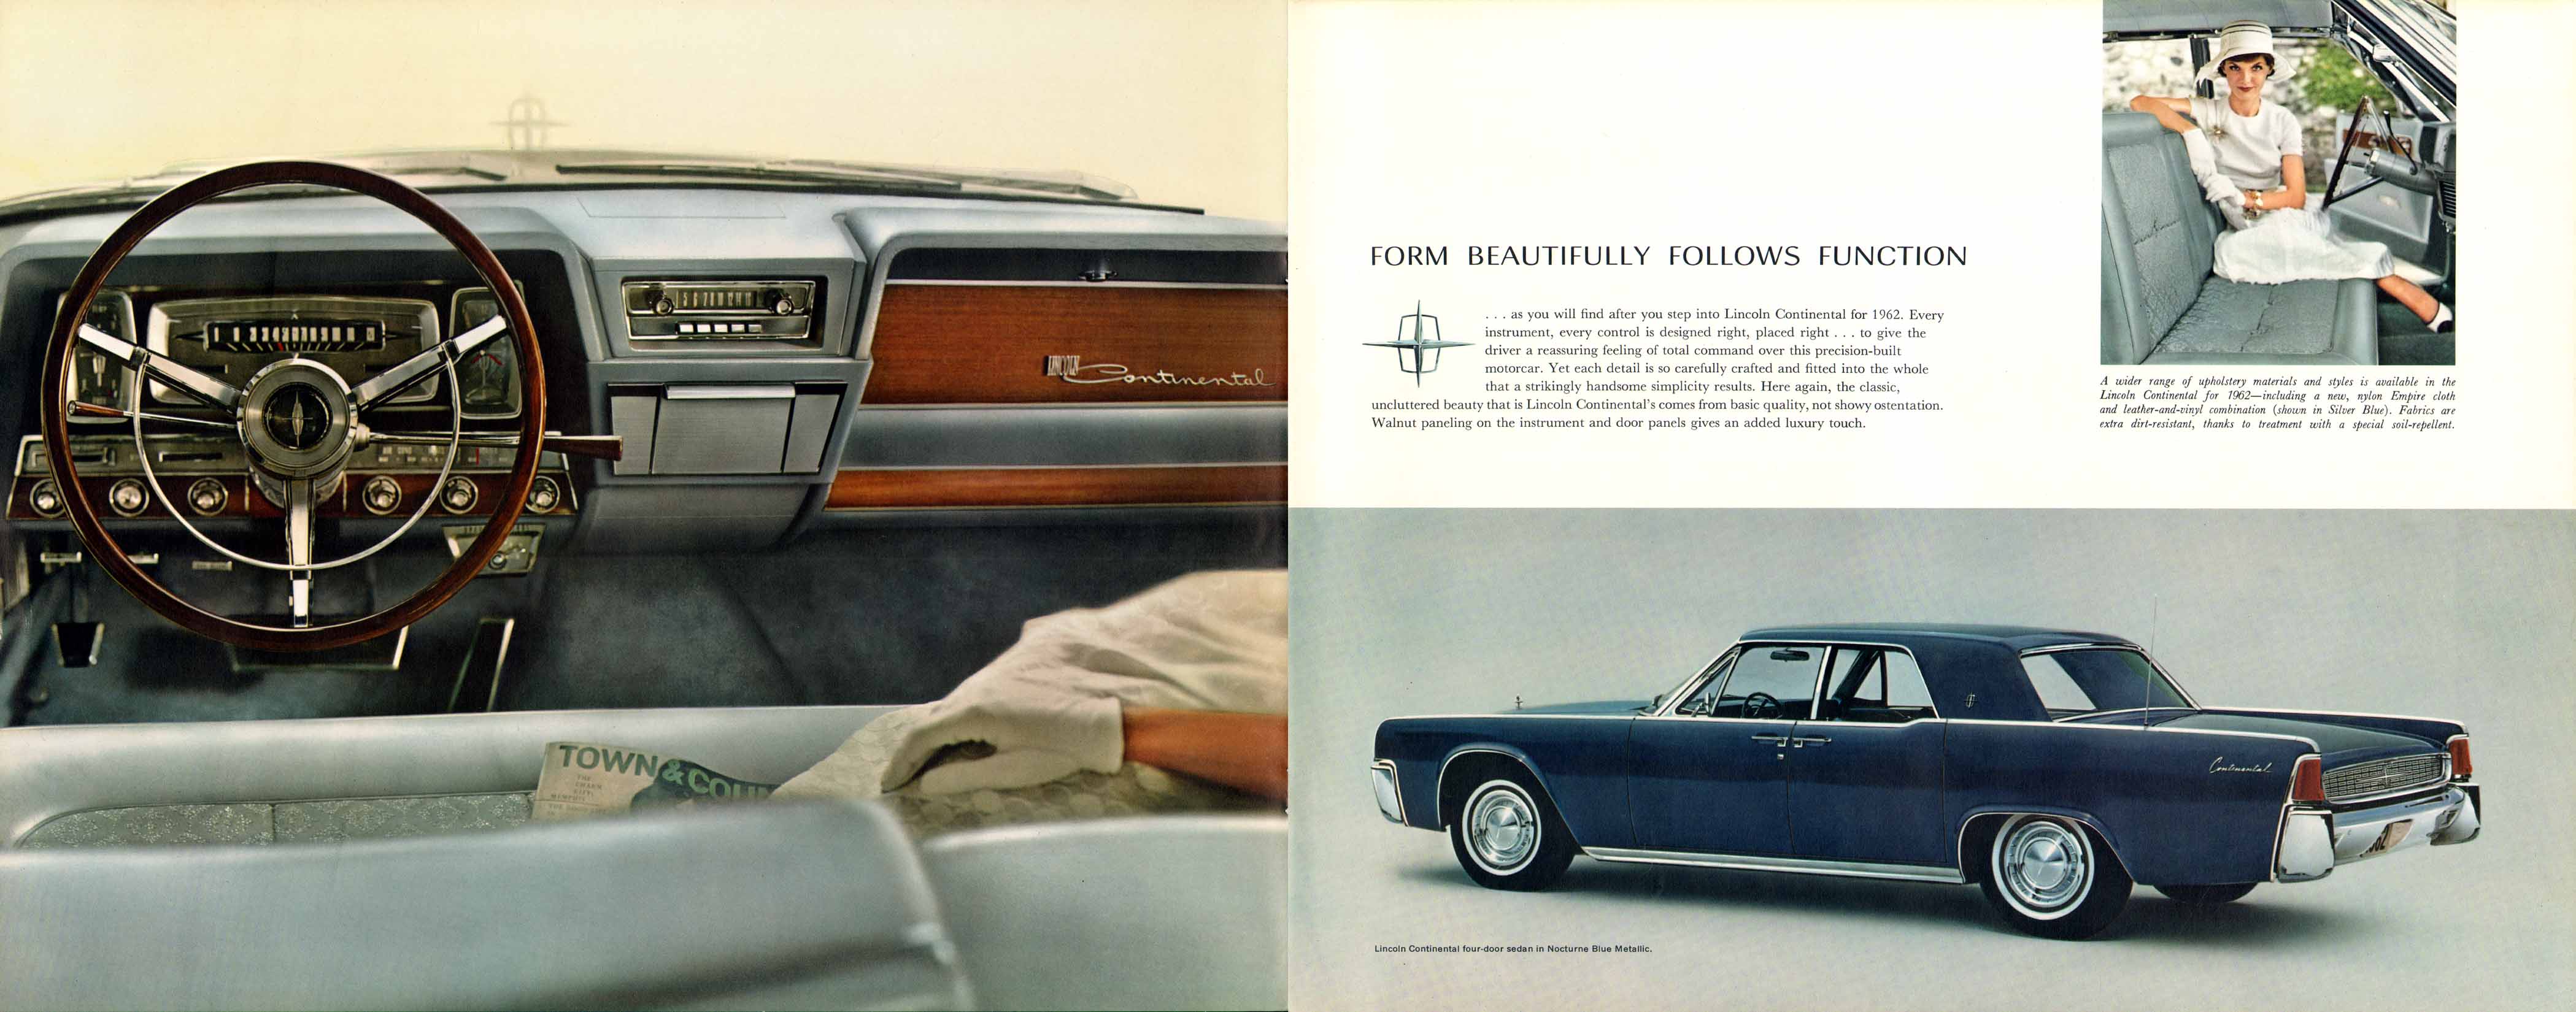 1962_Lincoln_Continental_Prestige_-10-11